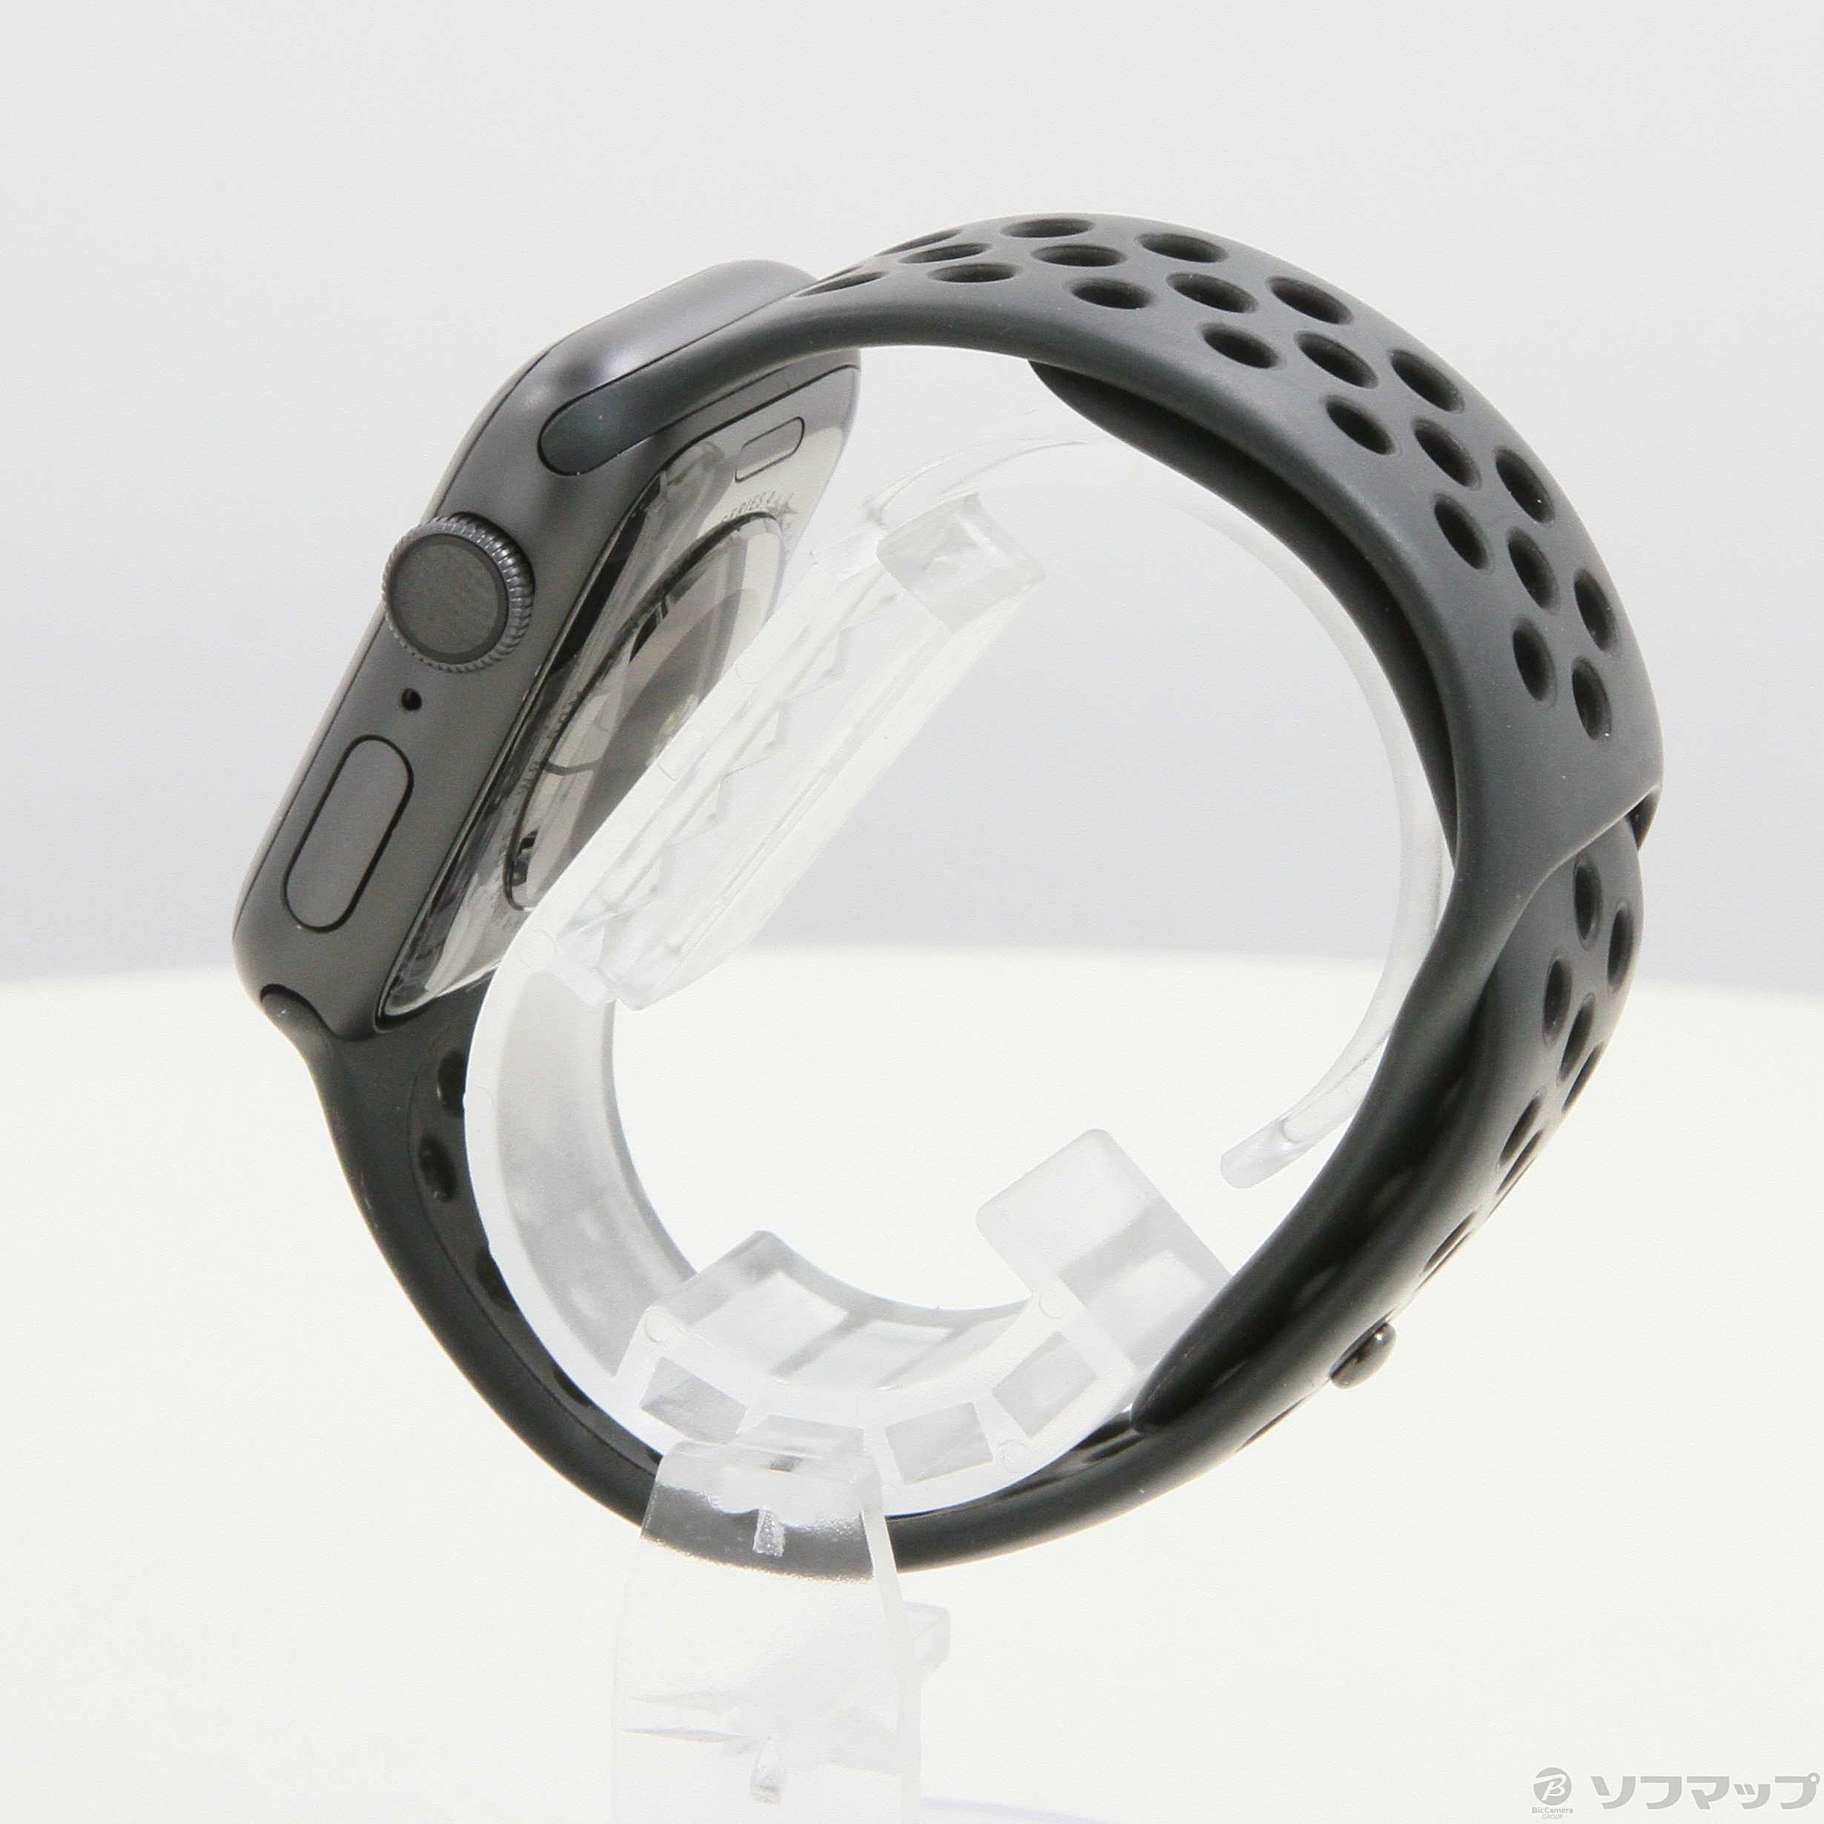 中古】Apple Watch Series 4 Nike+ GPS 40mm スペースグレイ ...